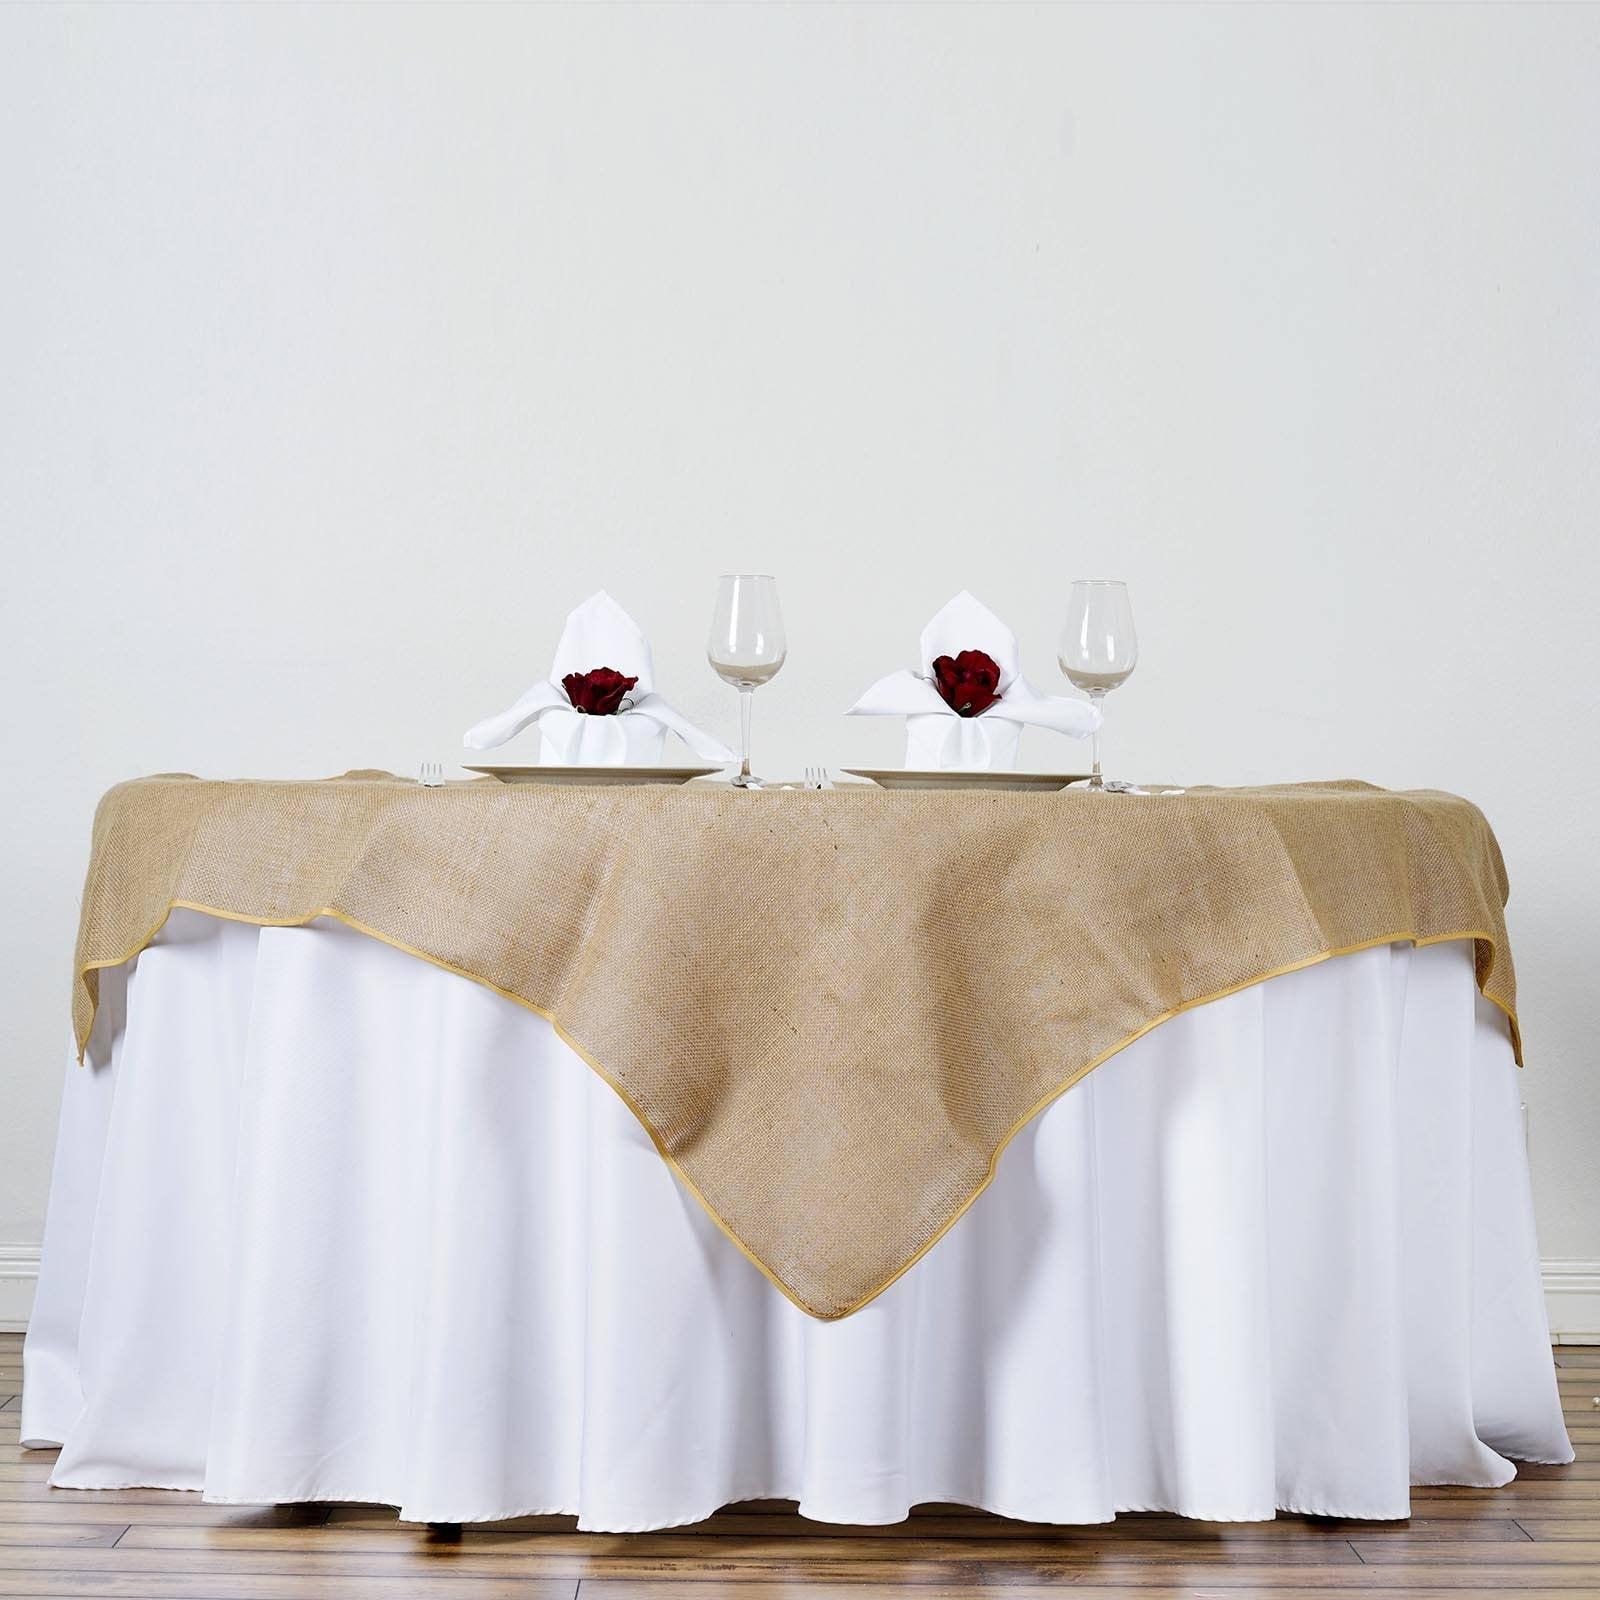 10 Lot 54"×54" Burlap Tablecloths Overlays Seamless Wedding 100% Natural Jute 